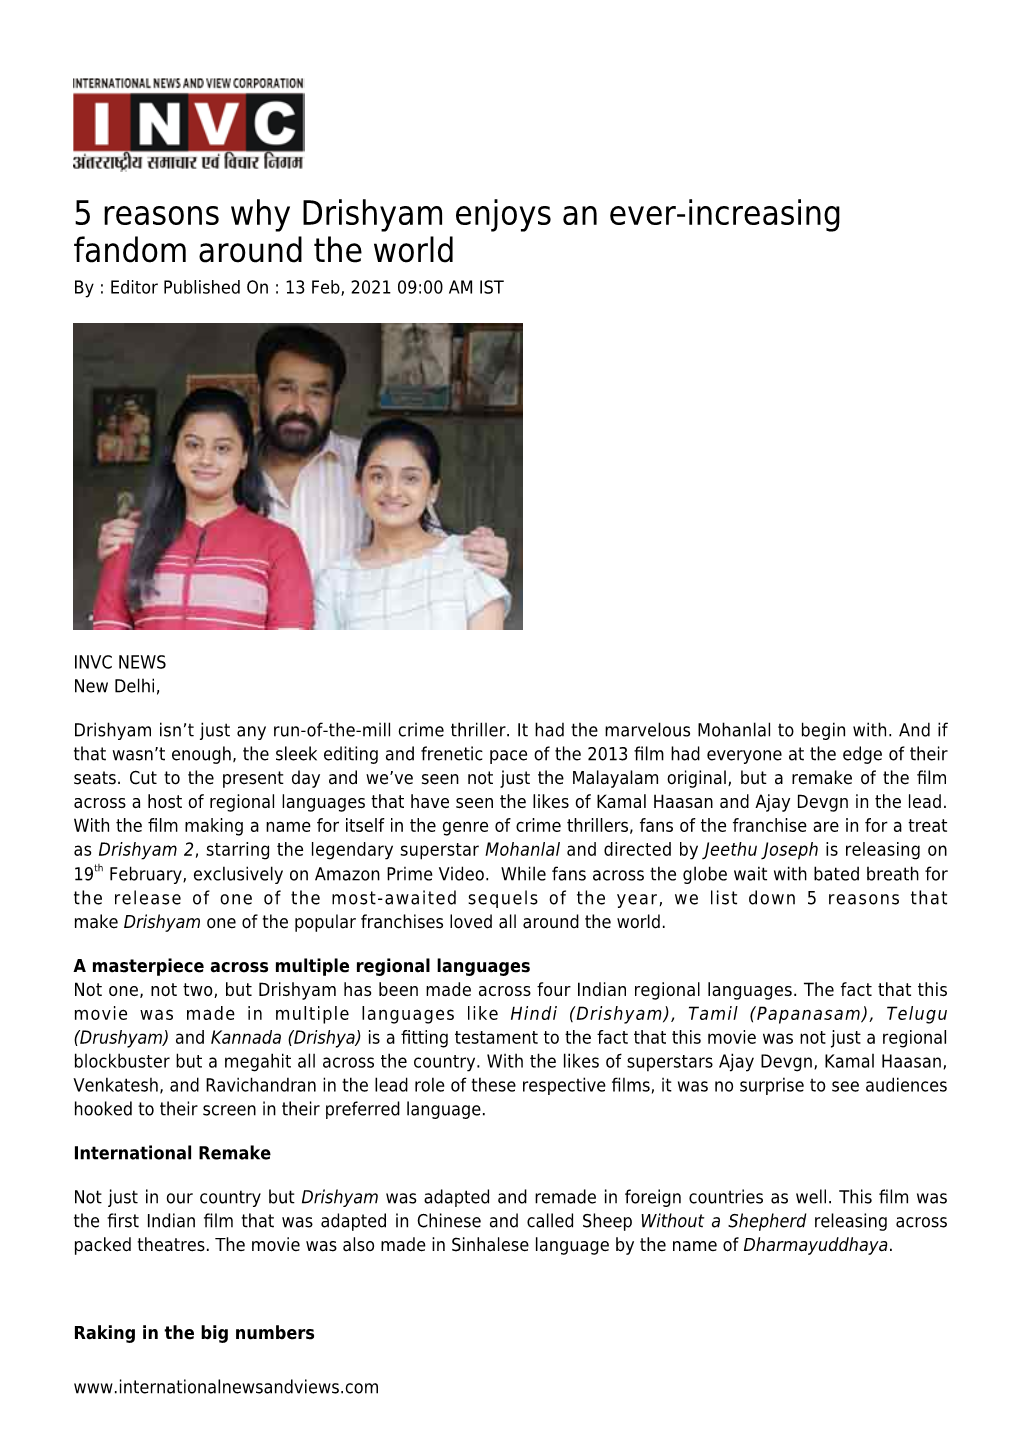 5 Reasons Why Drishyam Enjoys an Ever-Increasing Fandom Around the World by : Editor Published on : 13 Feb, 2021 09:00 AM IST